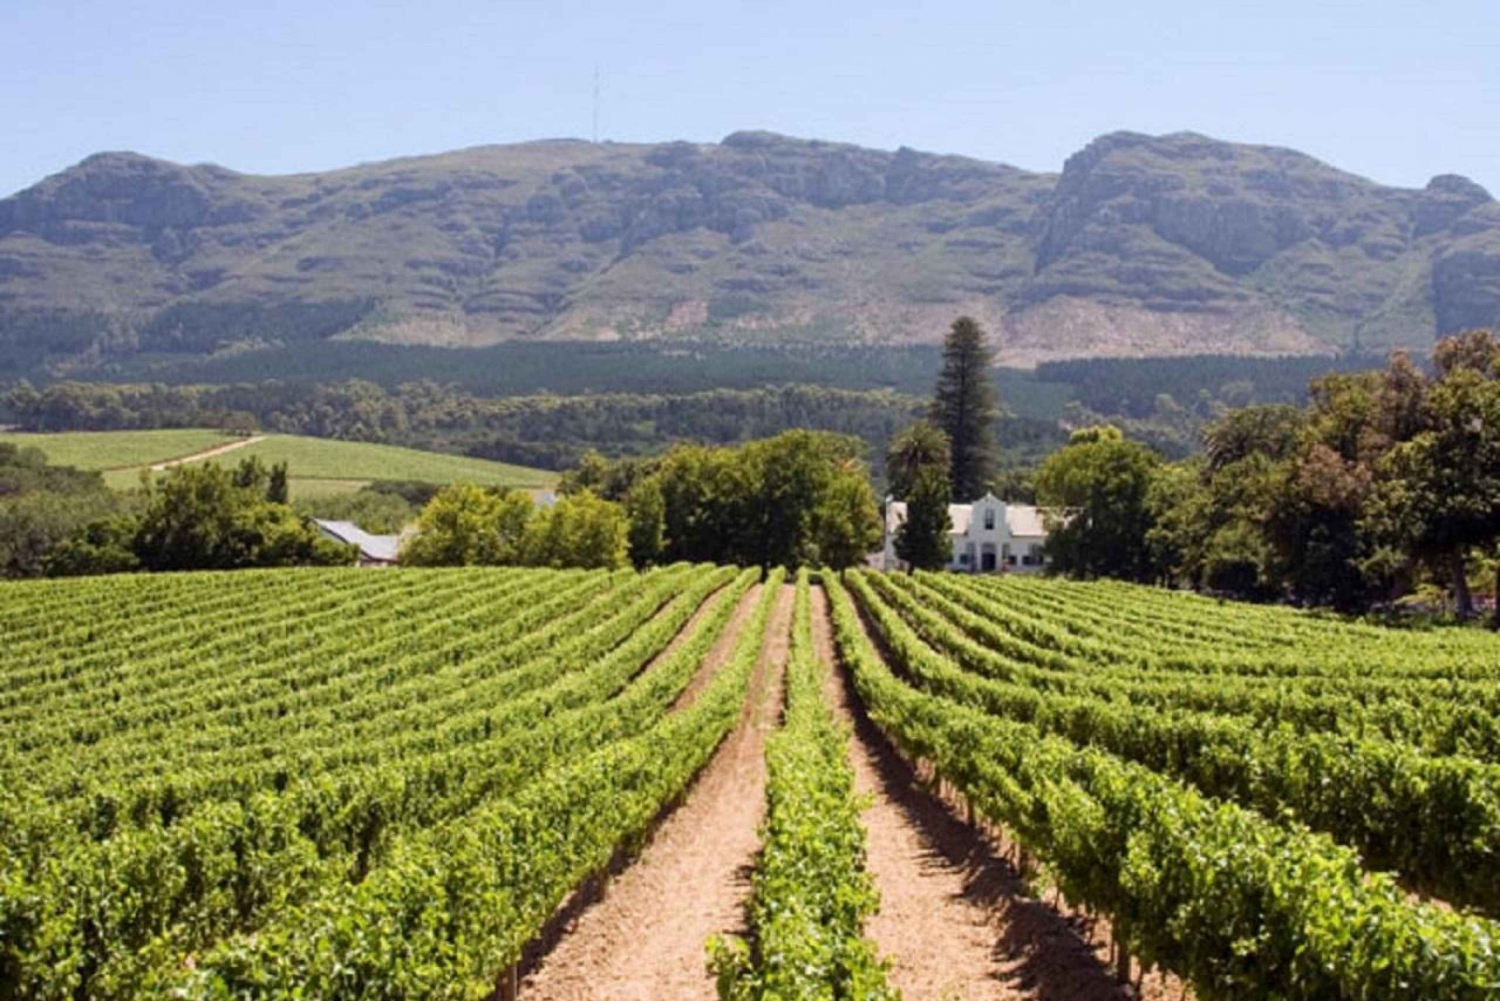 Cape Town-tur med vinsmaking og heldagstur til halvøya.